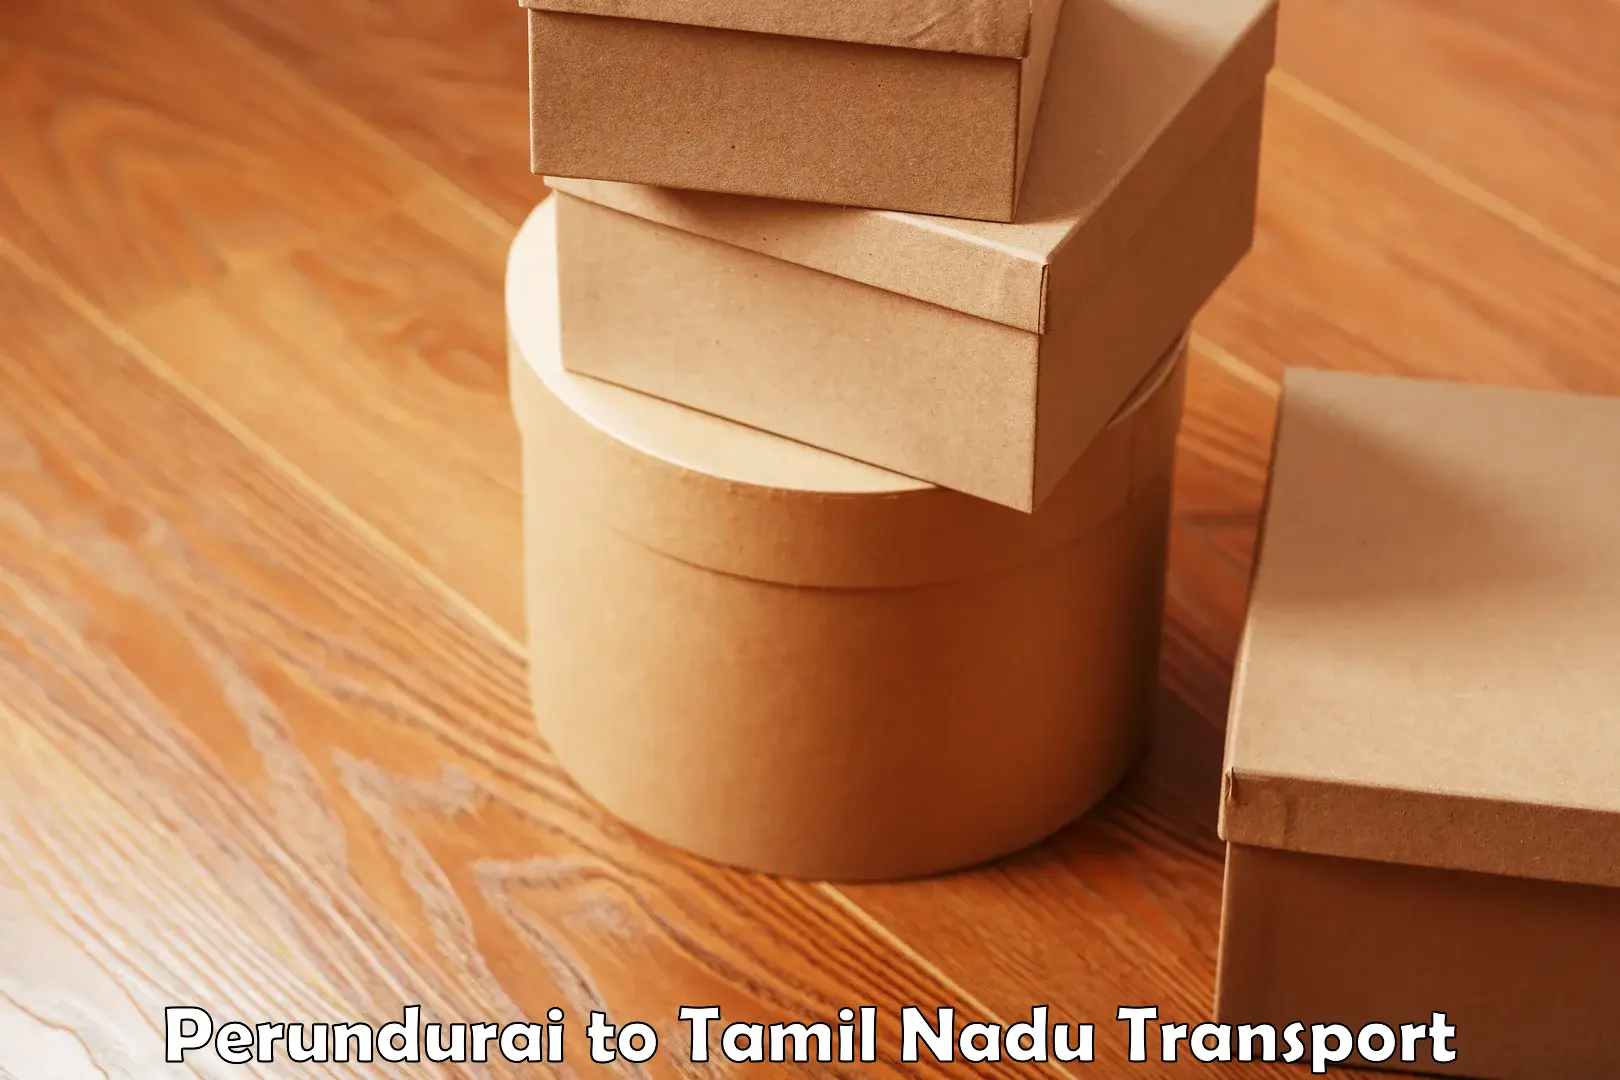 Nationwide transport services Perundurai to Tamil Nadu